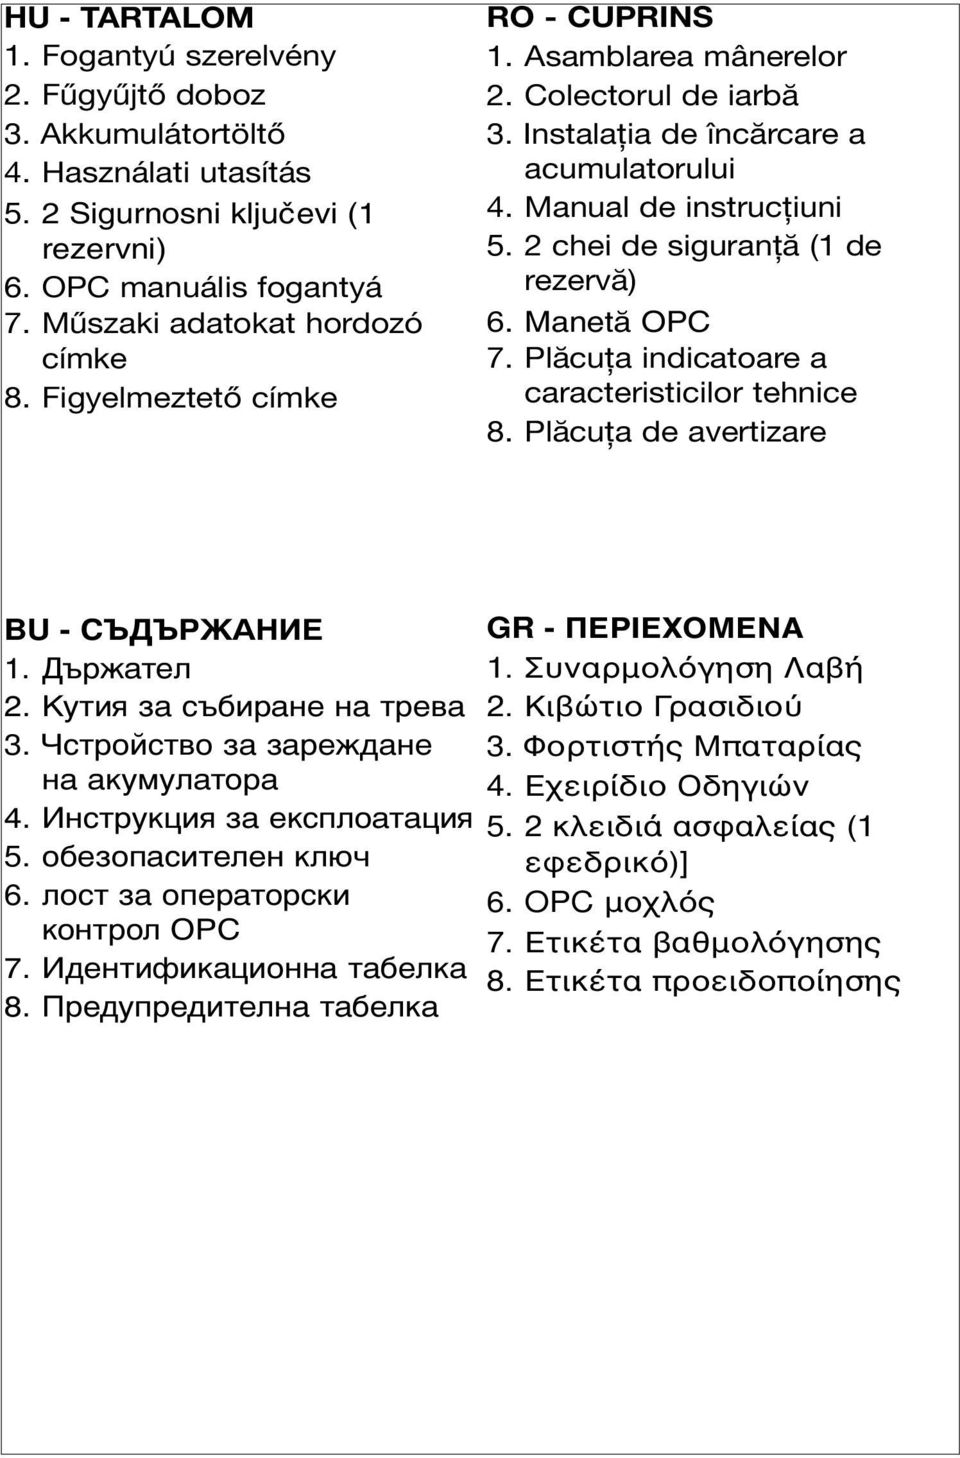 Manual de instrucţiuni 5. 2 chei de siguranţă (1 de rezervă) 6. Manet\ OPC 7. Plăcuţa indicatoare a caracteristicilor tehnice 8. Plăcuţa de avertizare BU - 1. 2. K 3. 4. 5. 6. OPC 7. 8. GR - ΠΕΡIΕΧΟΜΕNΑ 1.